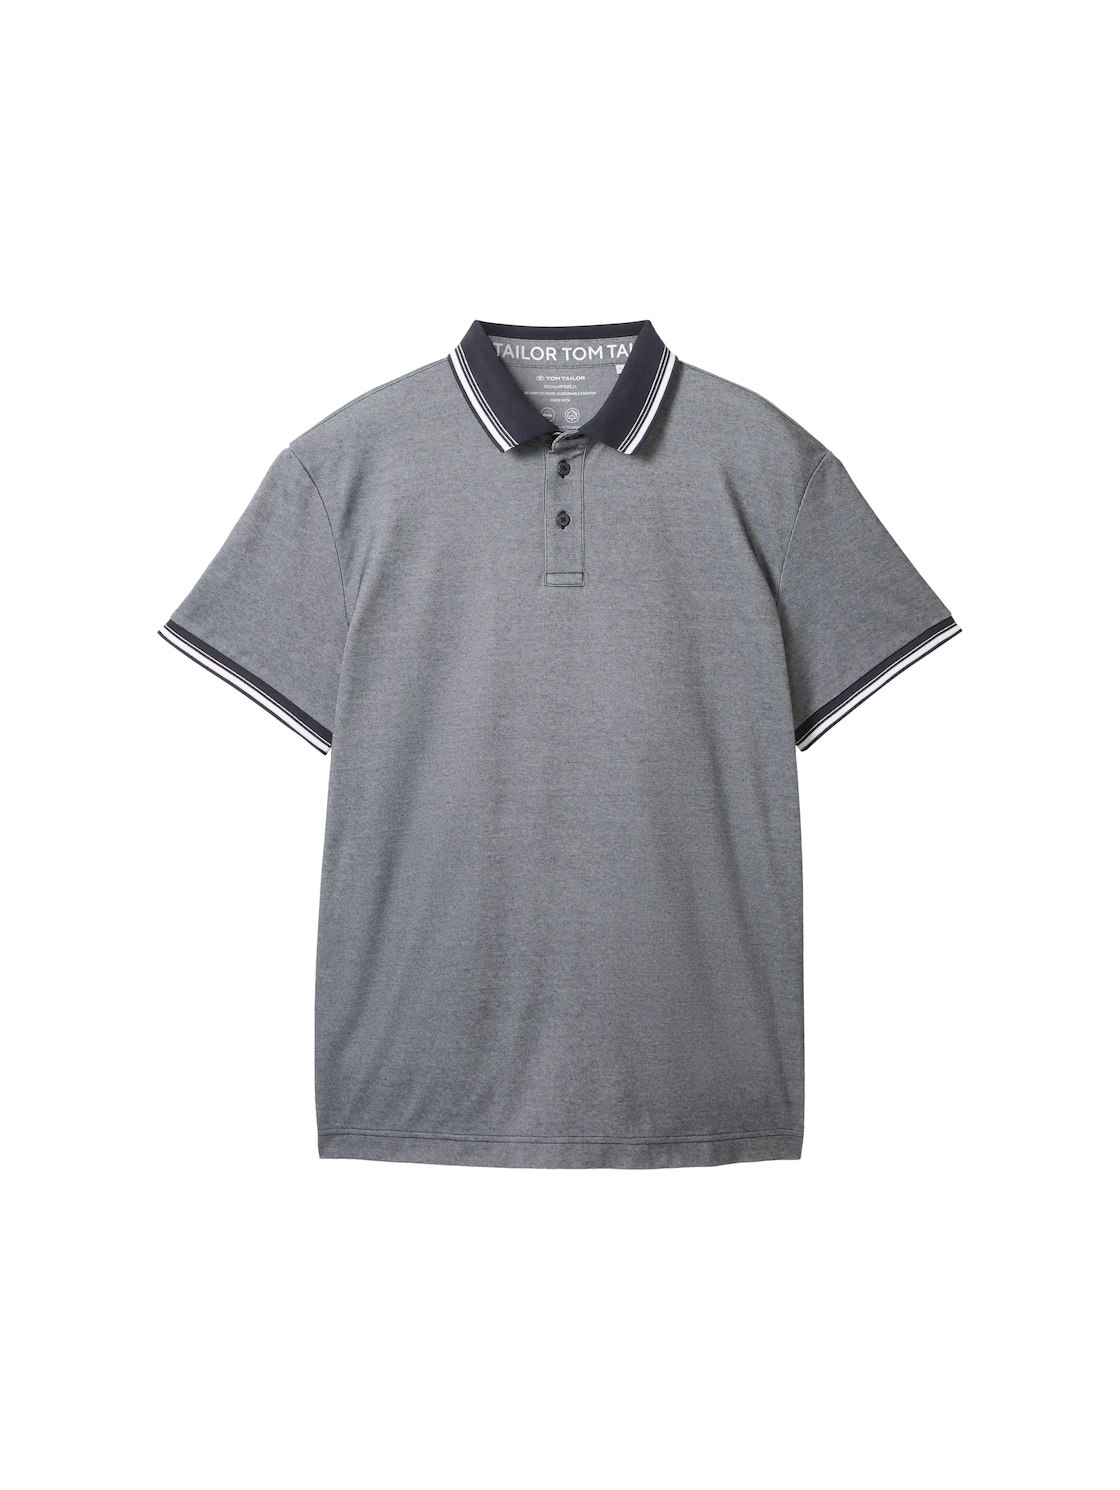 TOM TAILOR Herren COOLMAX® Poloshirt, blau, Uni, Gr. XL von Tom Tailor